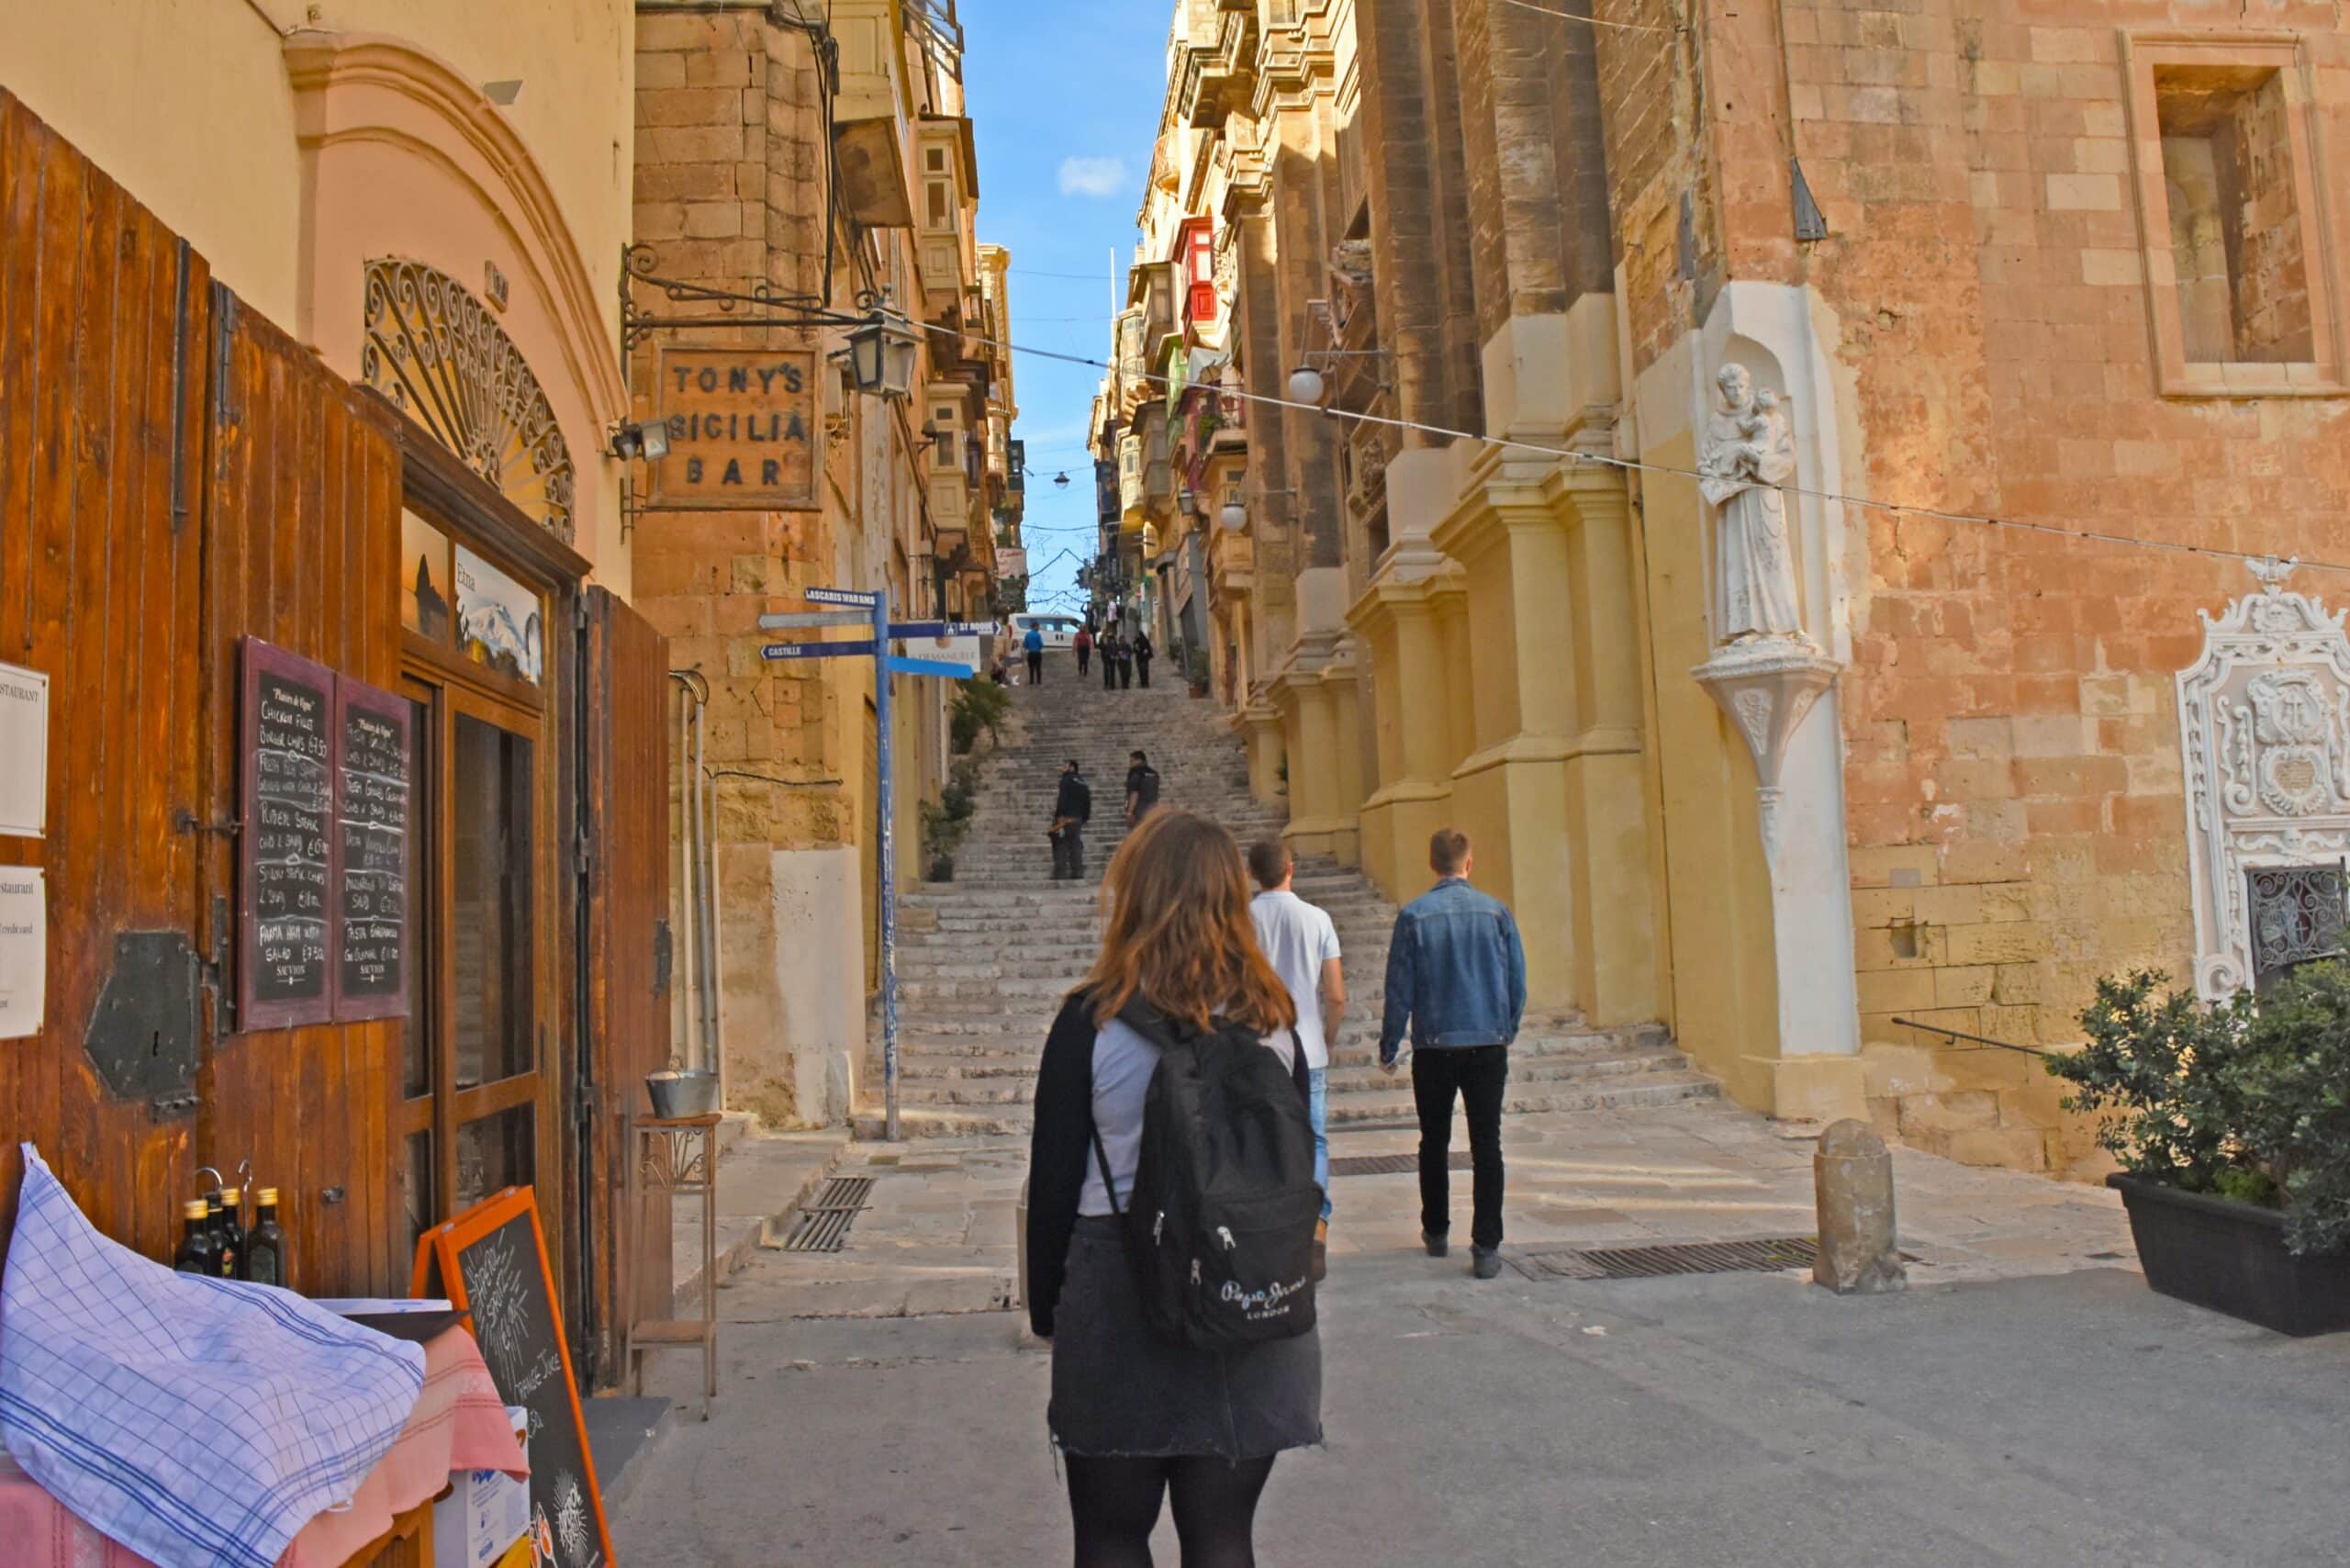 Uma rua estreita, com escadaria e rodeada por construções antigas em Malta, na Europa. Também há uma mulher, de cabelo avermelhado, com mochila nas costas, e dois homens indo em direção aos degraus